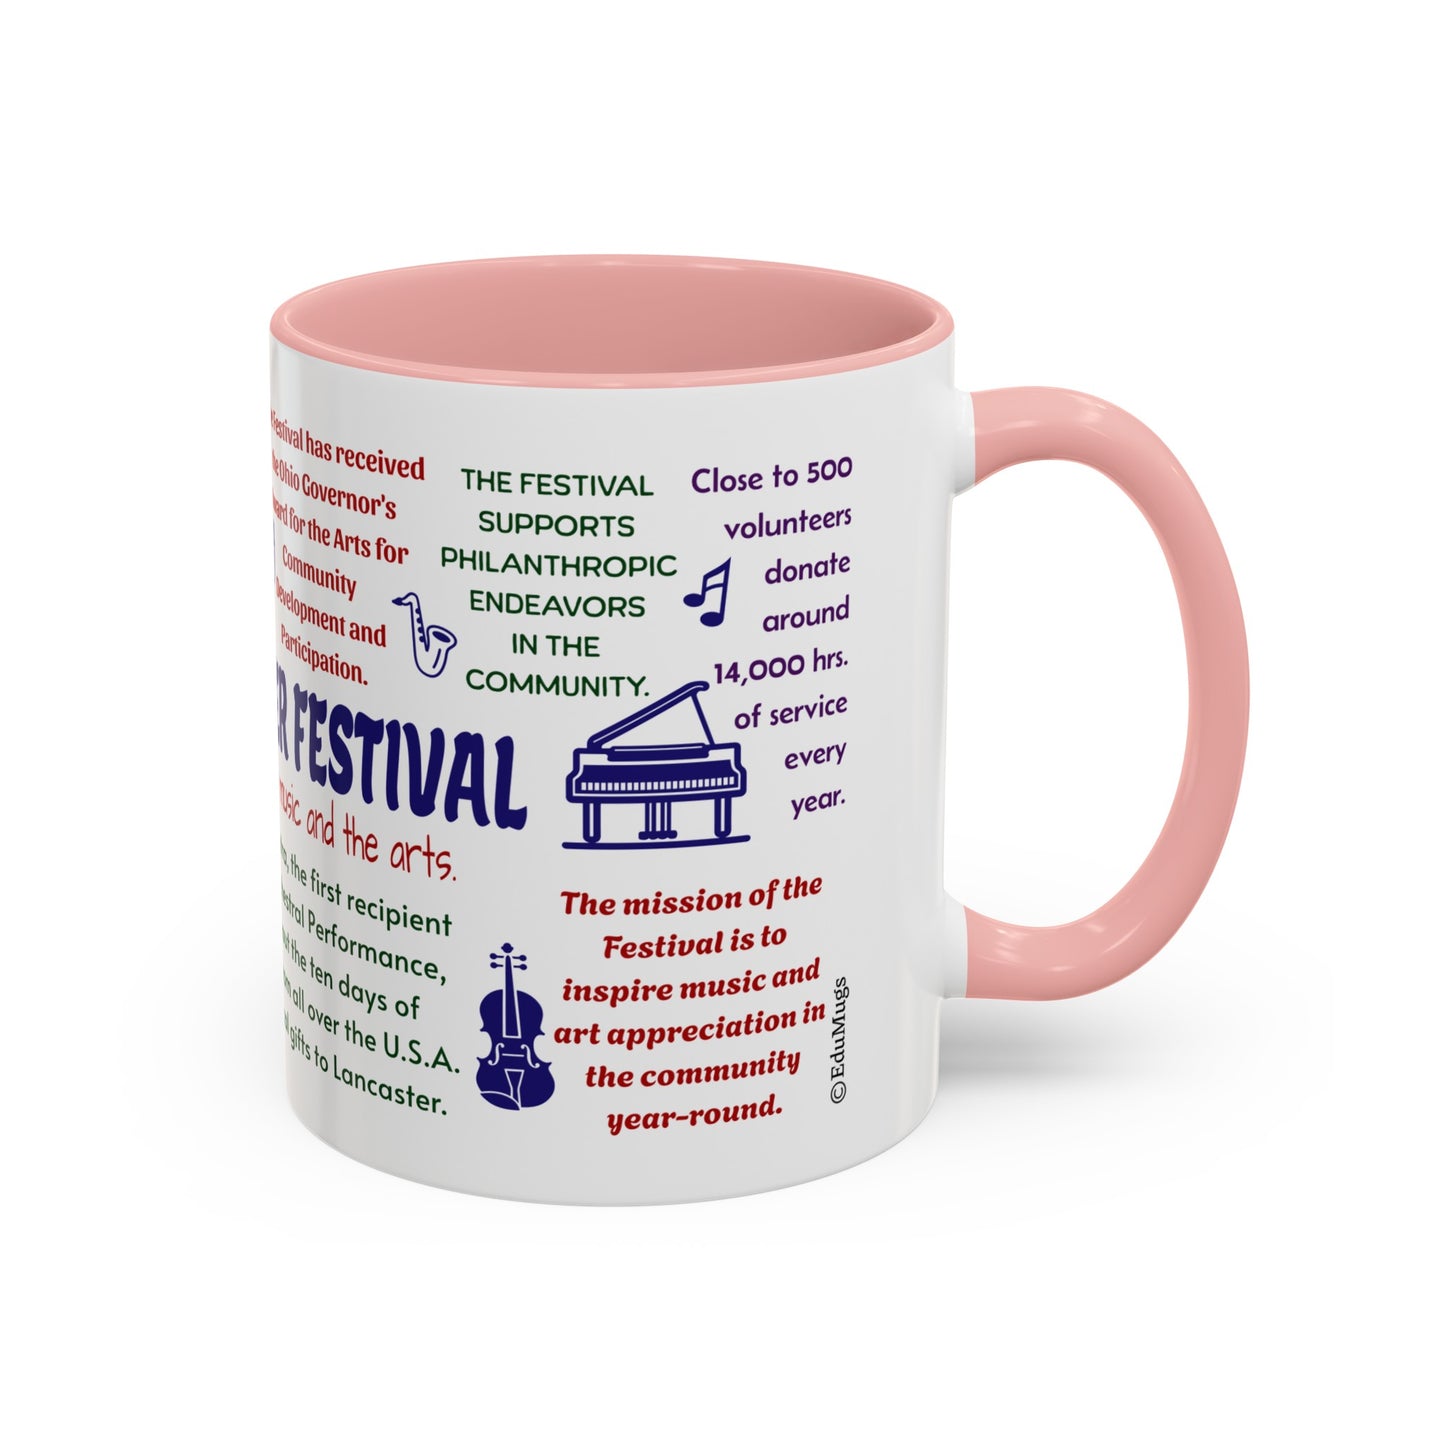 Lancaster Festival 40th Anniversary Coffee Mug, 11 oz or 15oz